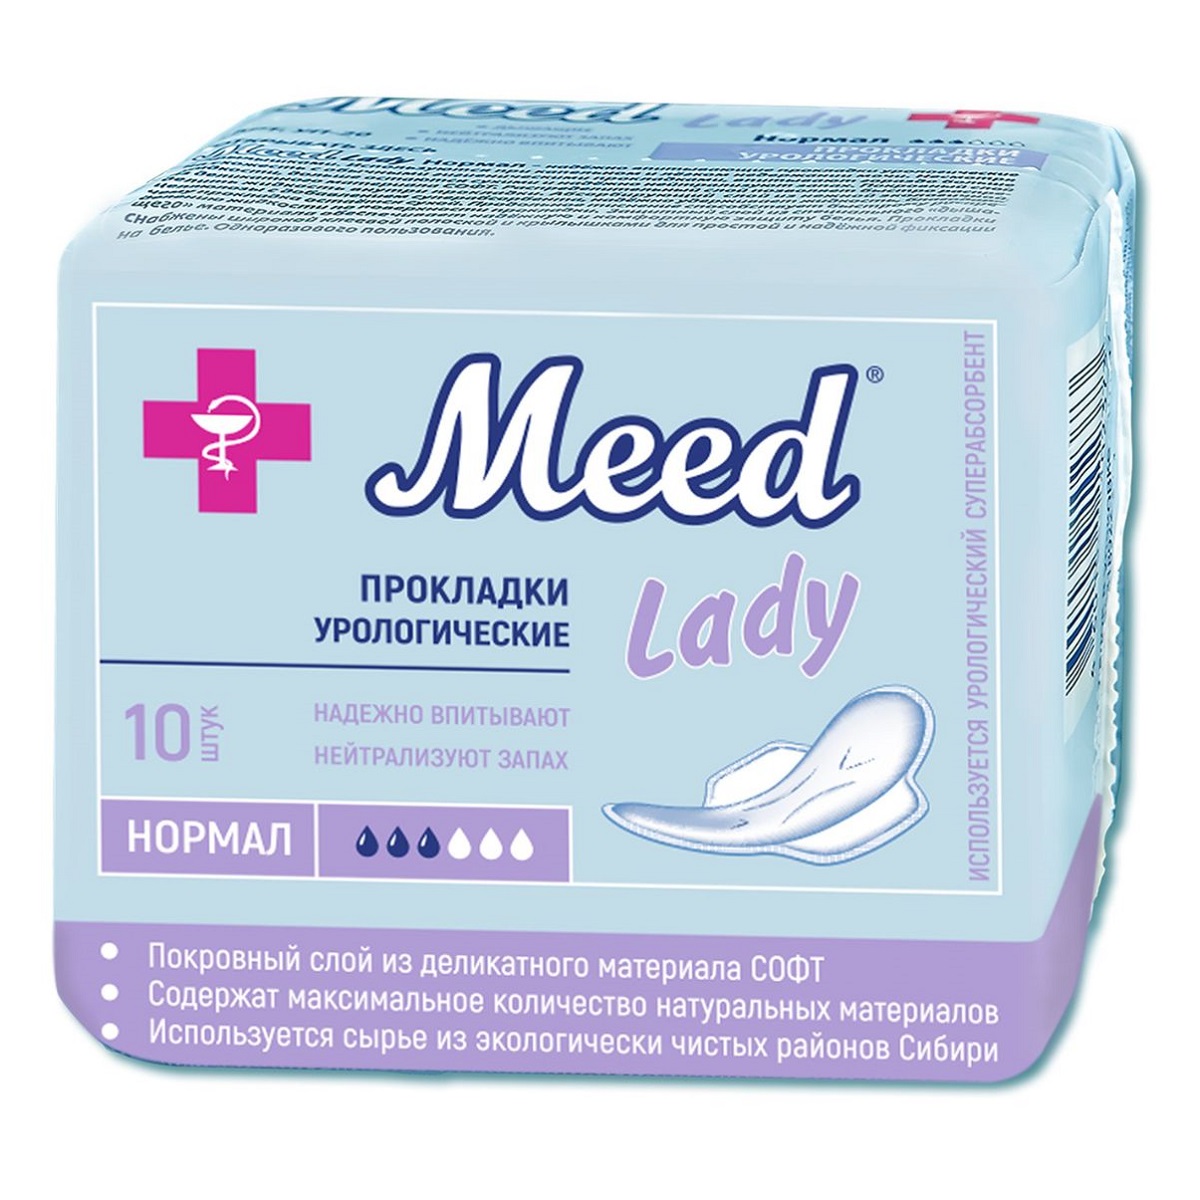 Meed Урологические прокладки для женщин нормал, 10 шт (Meed, Урологические прокладки)